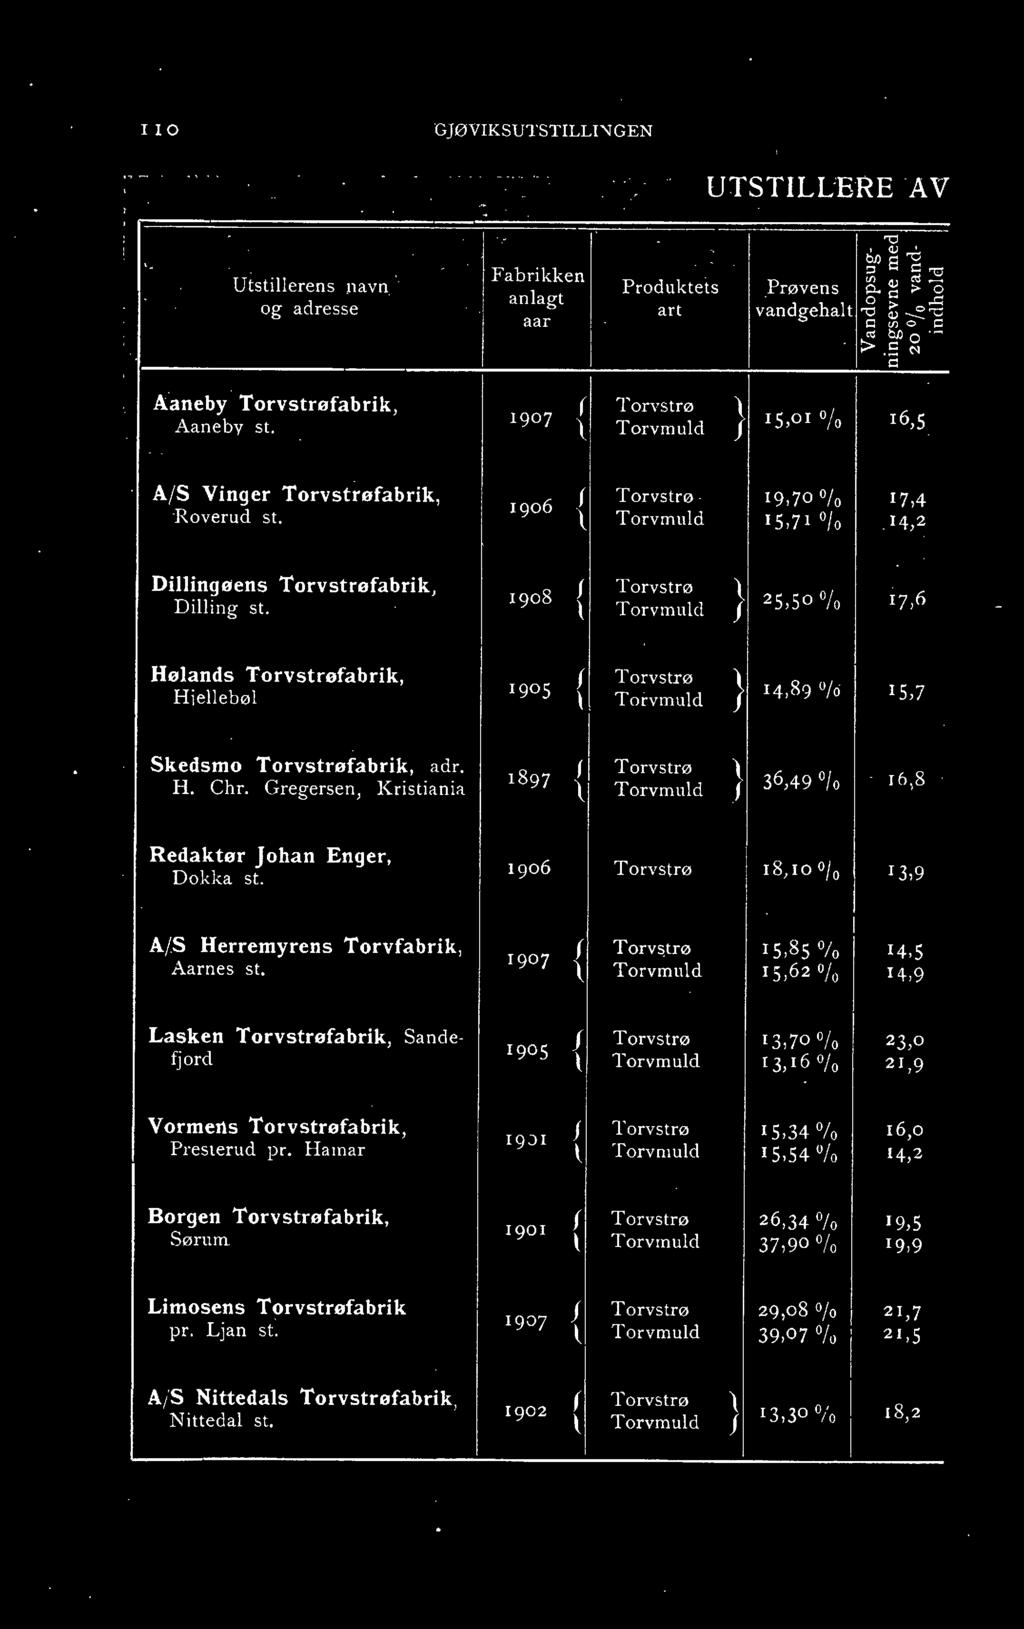 1907 \ } Torvmuld >tg-~ i::: 15,01 -t, 16;5 A/S Vinger Torvstrøfabrik, 1906 ( Torvstrø. 19,70 % 17,4 Roverud st. \ Torvmuld 15,71 O/o "14,2 Dillingøens Torvstrøfabrik, Dilling st.